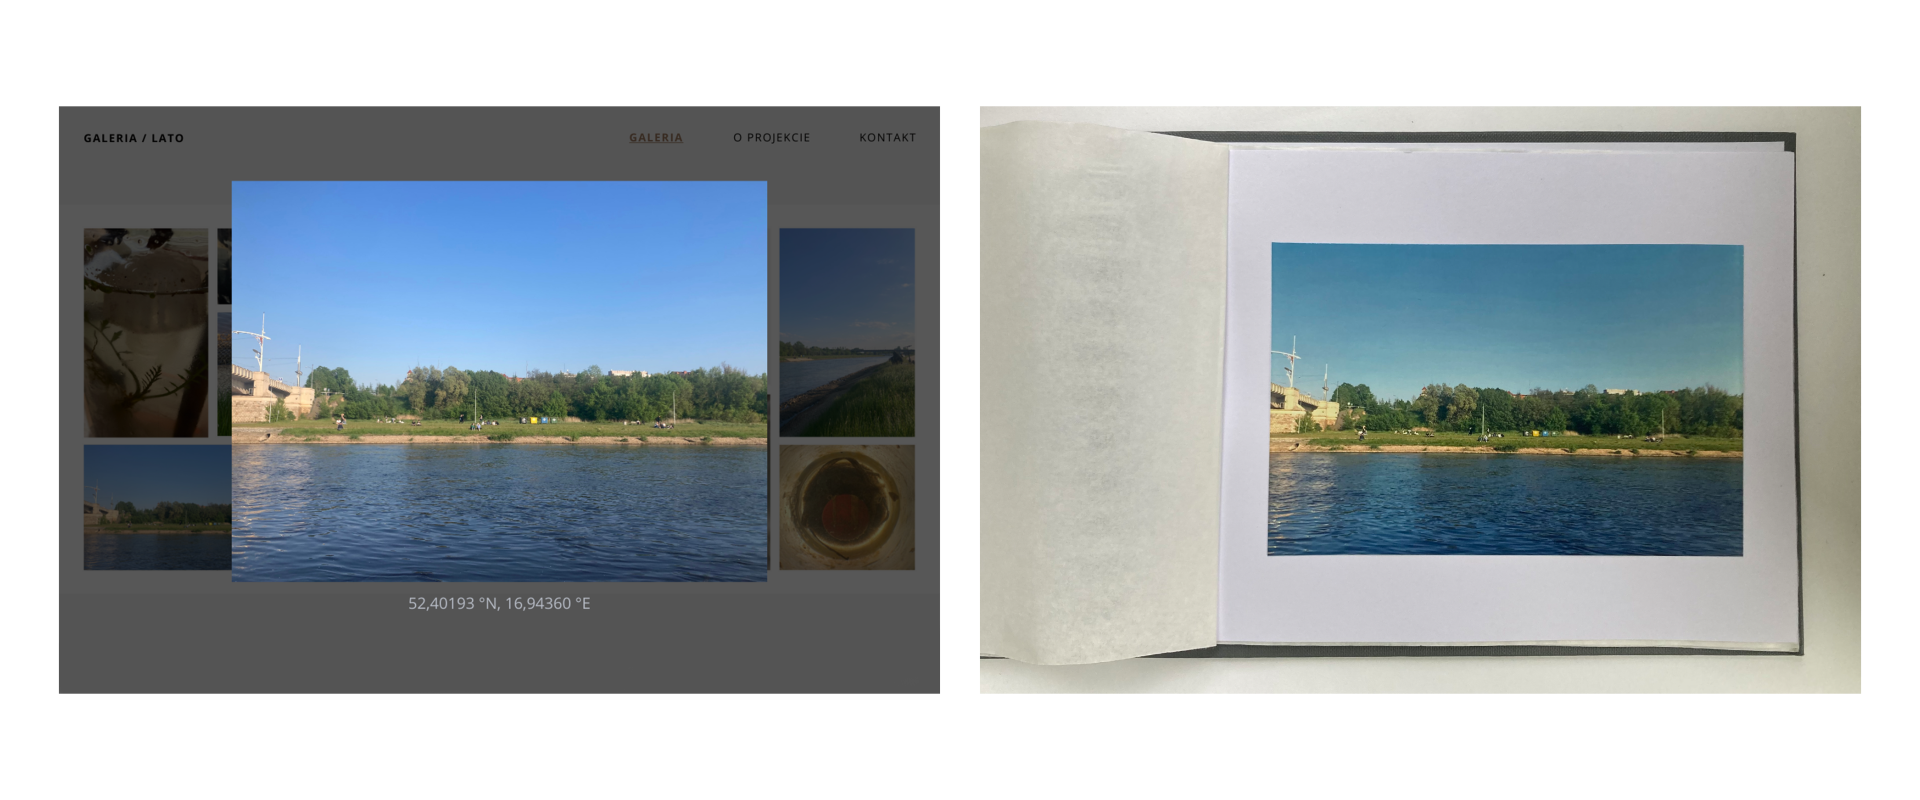 Układ dwóch zdjęć na białym tle przedstawiających tą samą fotografię w dwóch różnych sytuacjach. Zdjęcie po lewej stronie prezentuje fotografię w galerii internetowej, zdjęcie po prawej stronie przedstawia fotografię umieszczoną na białej stronie albumu fotograficznego.